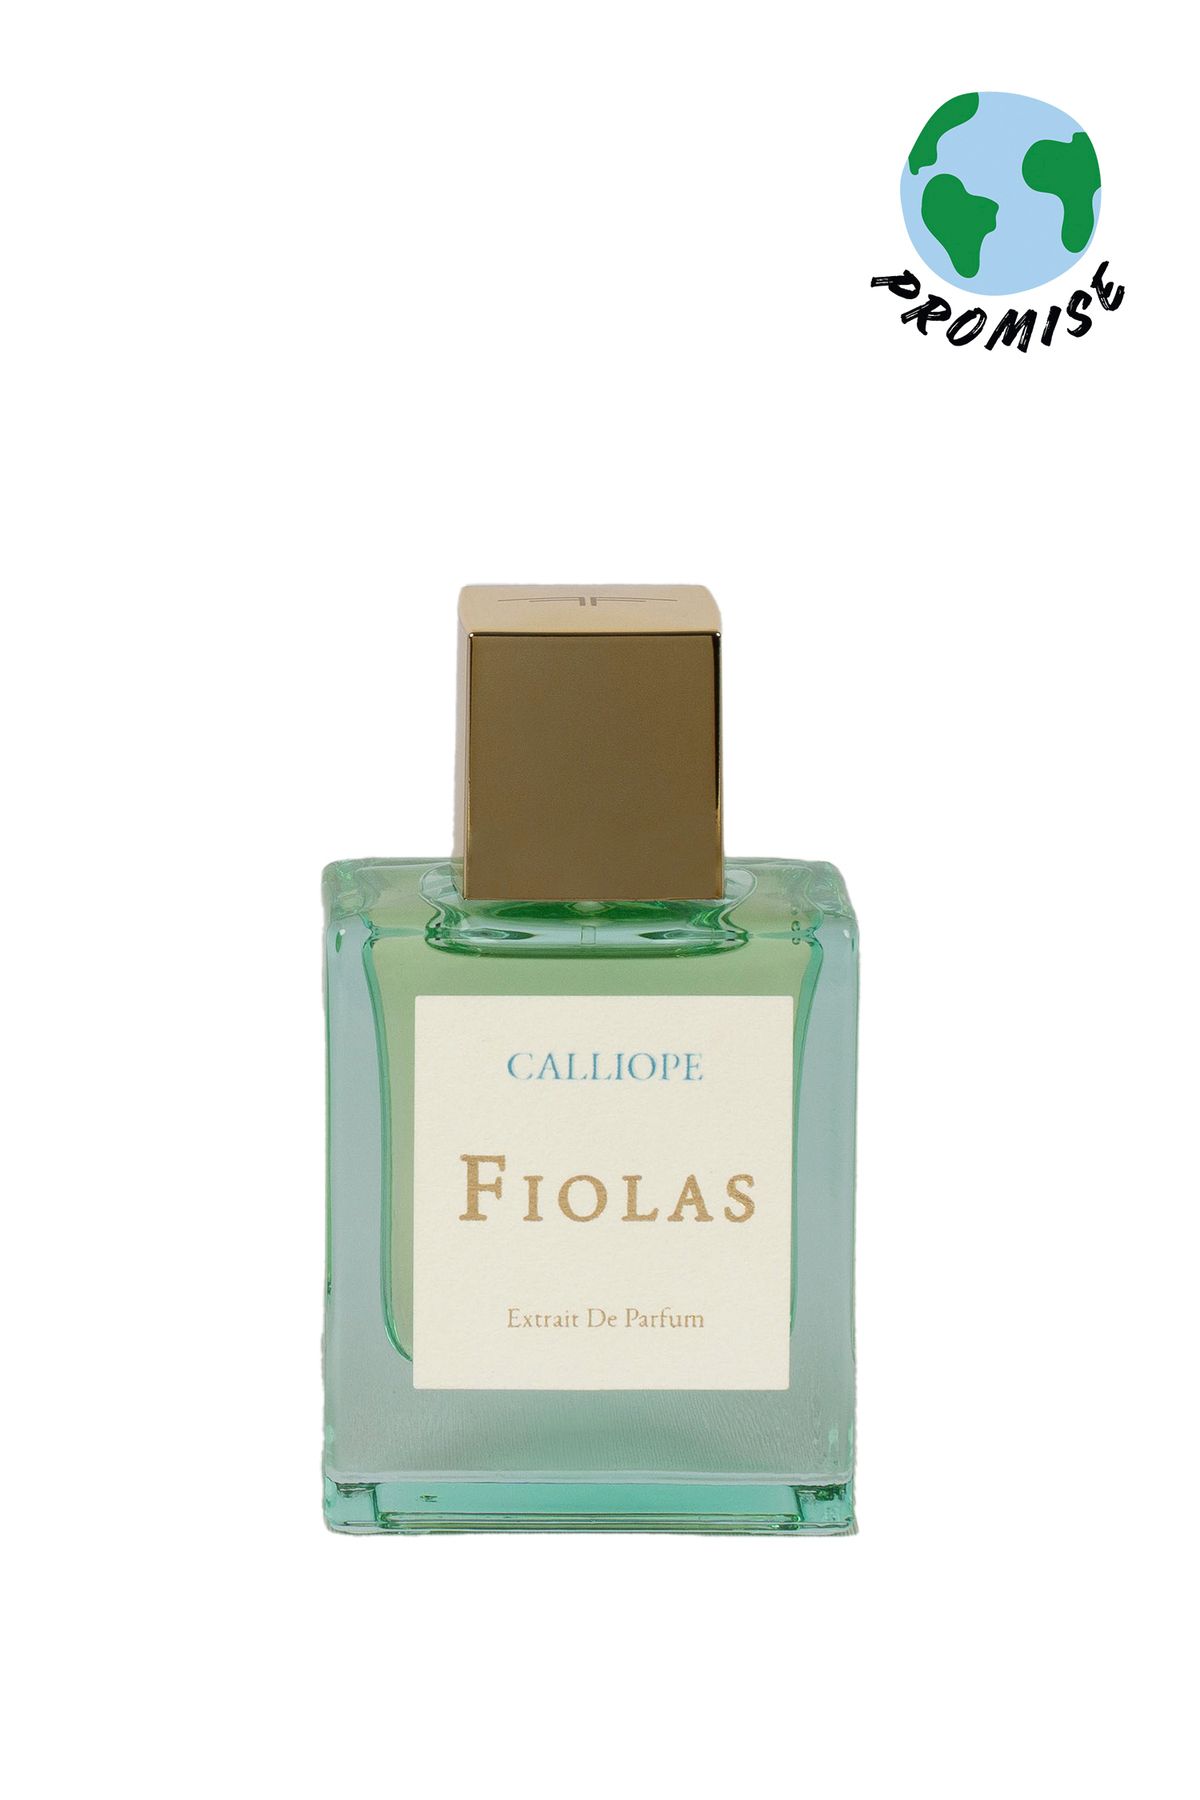 Fiolas Calliope Extrait De Parfum